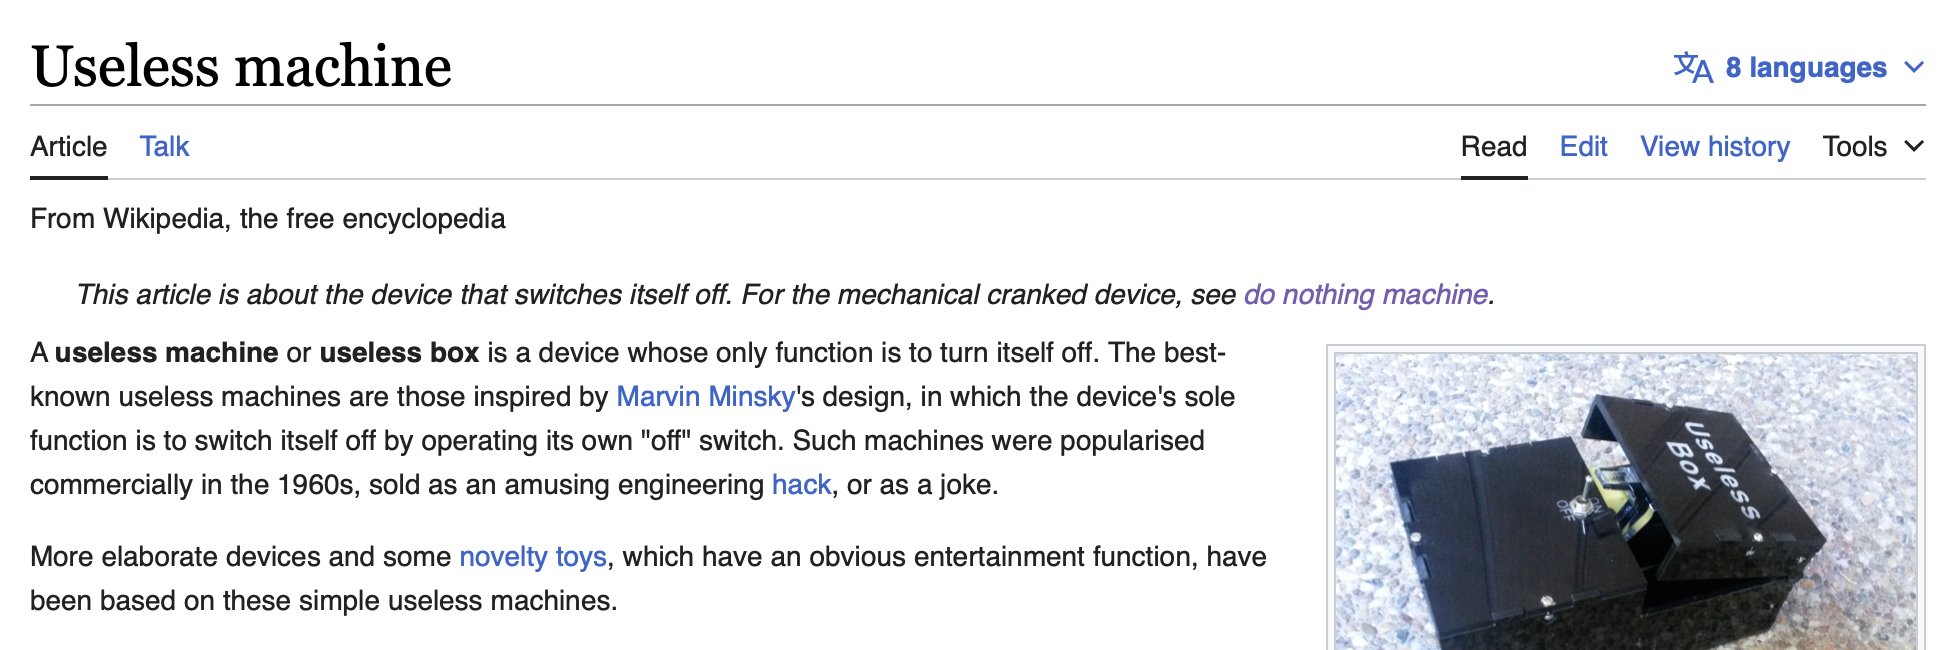 Useless machine - Wikipedia